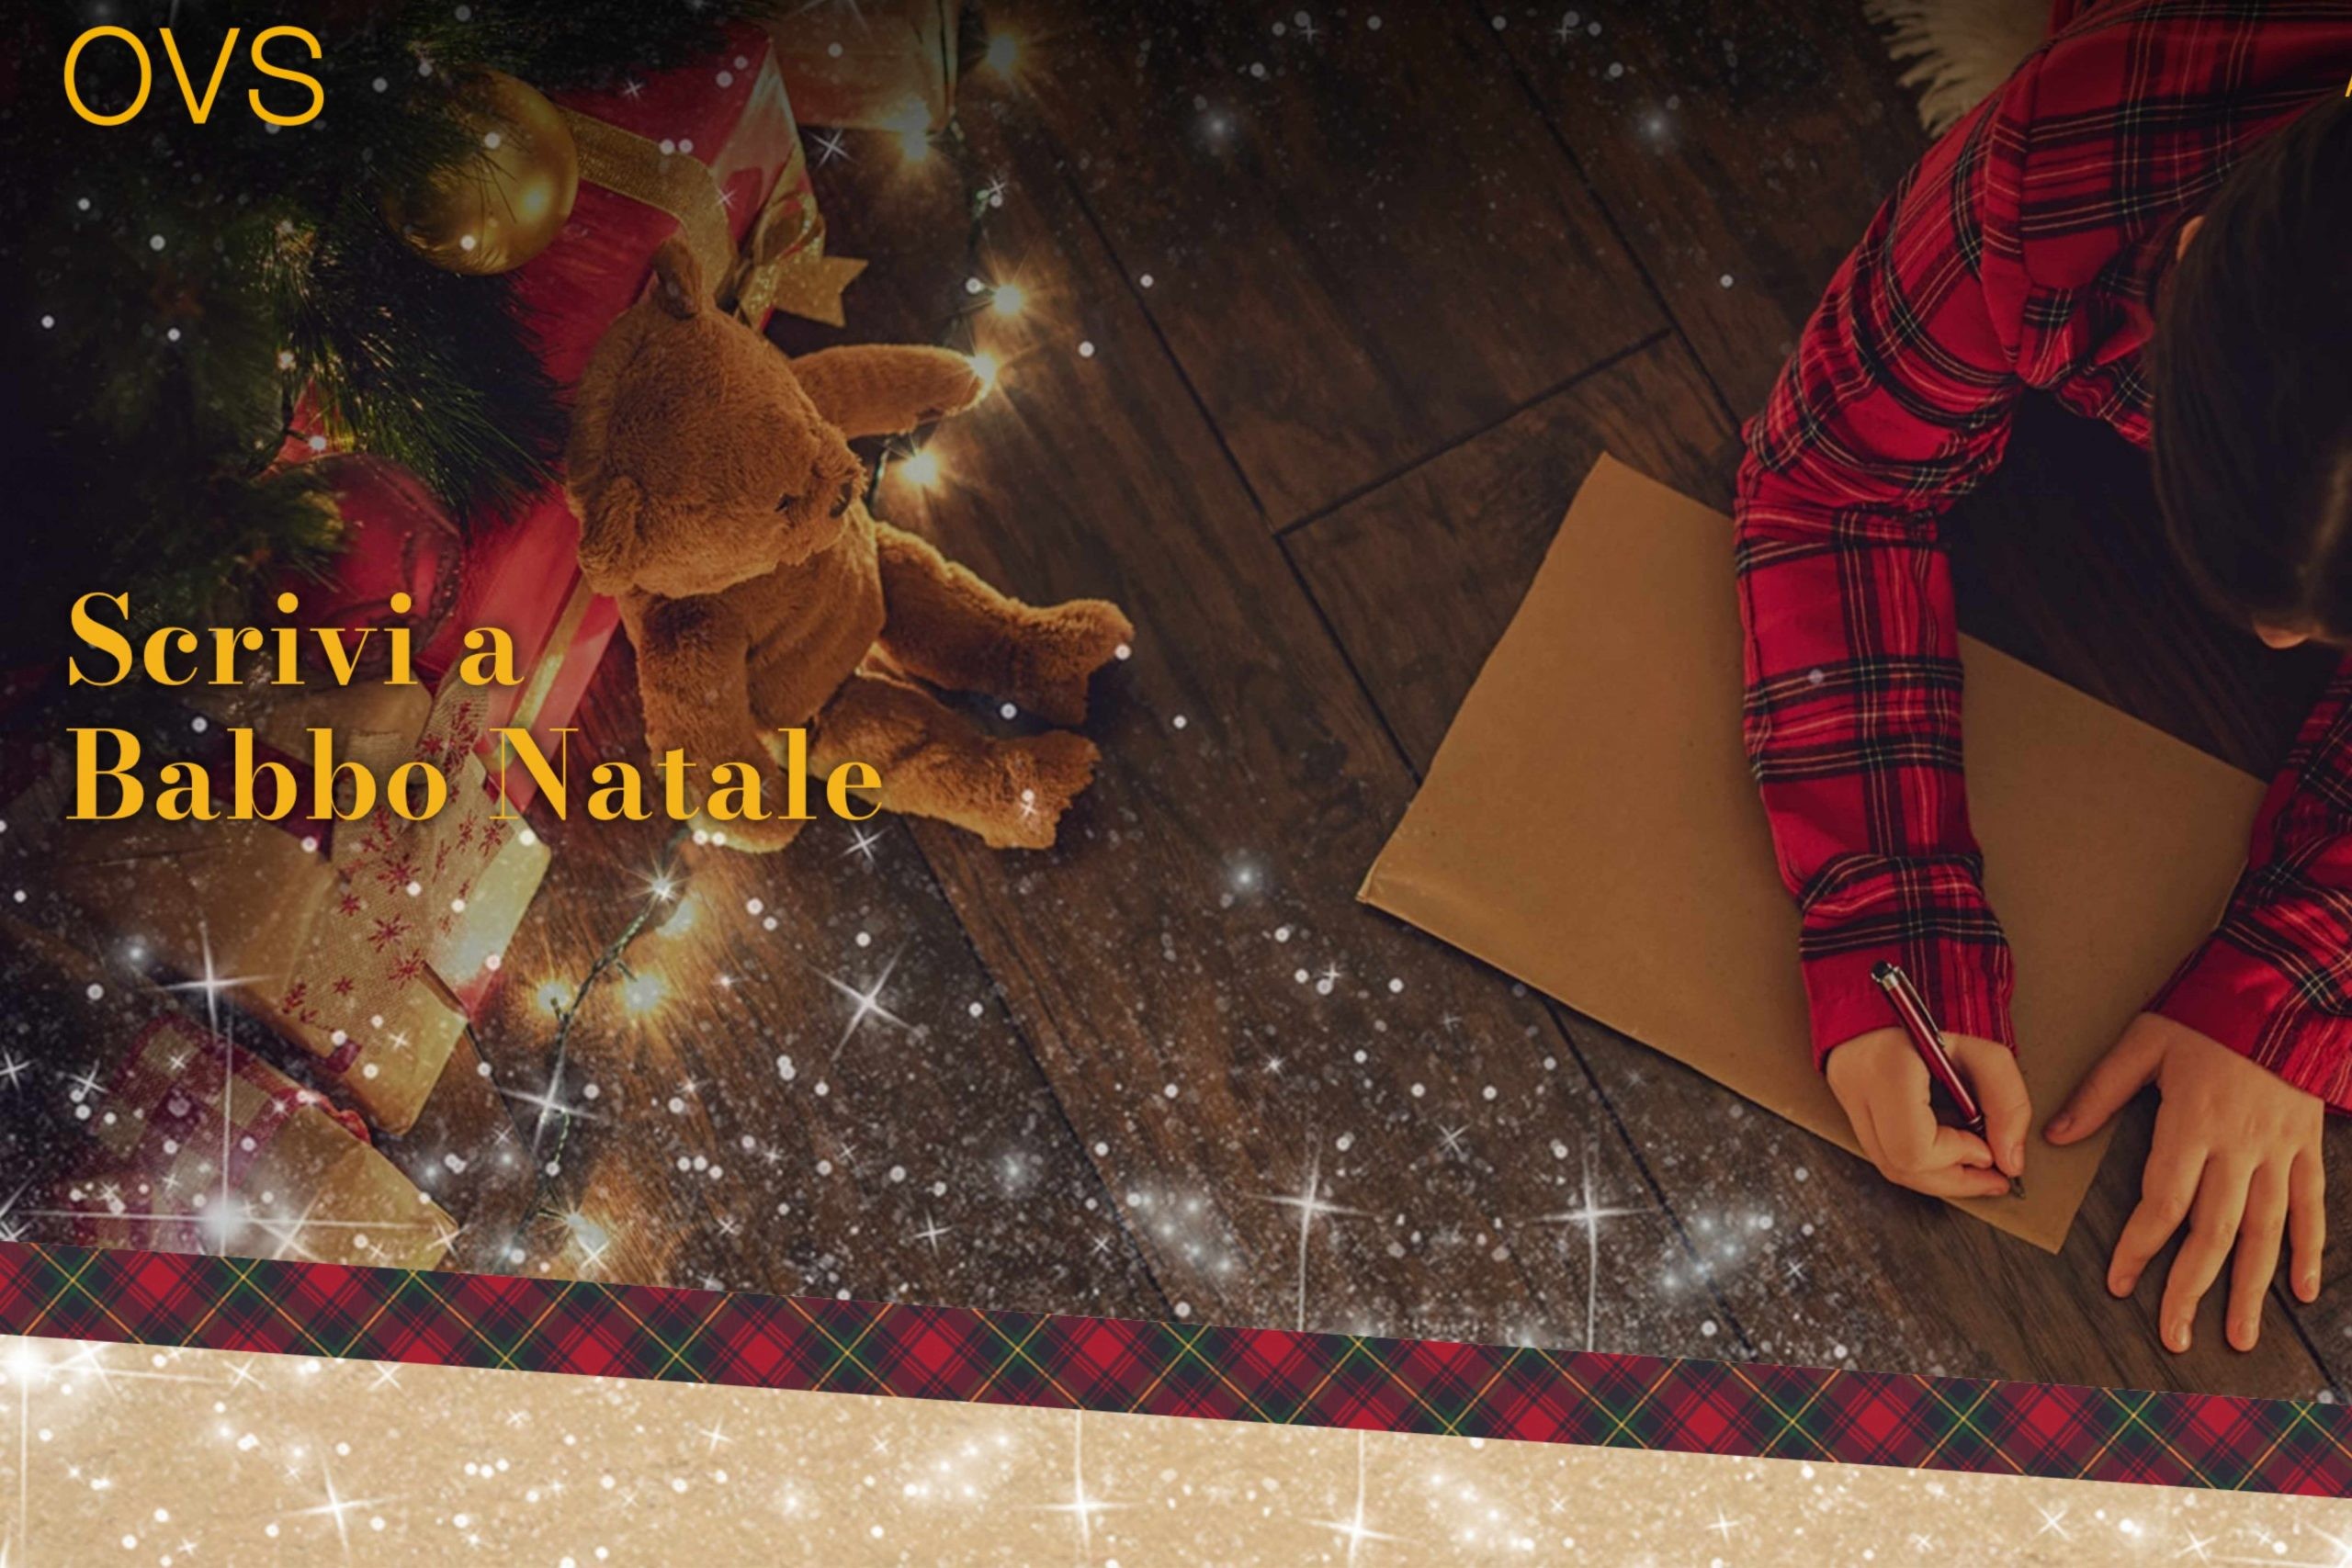 Concorso “Scrivi a Babbo Natale”: come vincere giocattoli e gift card OVS fino a 1000€